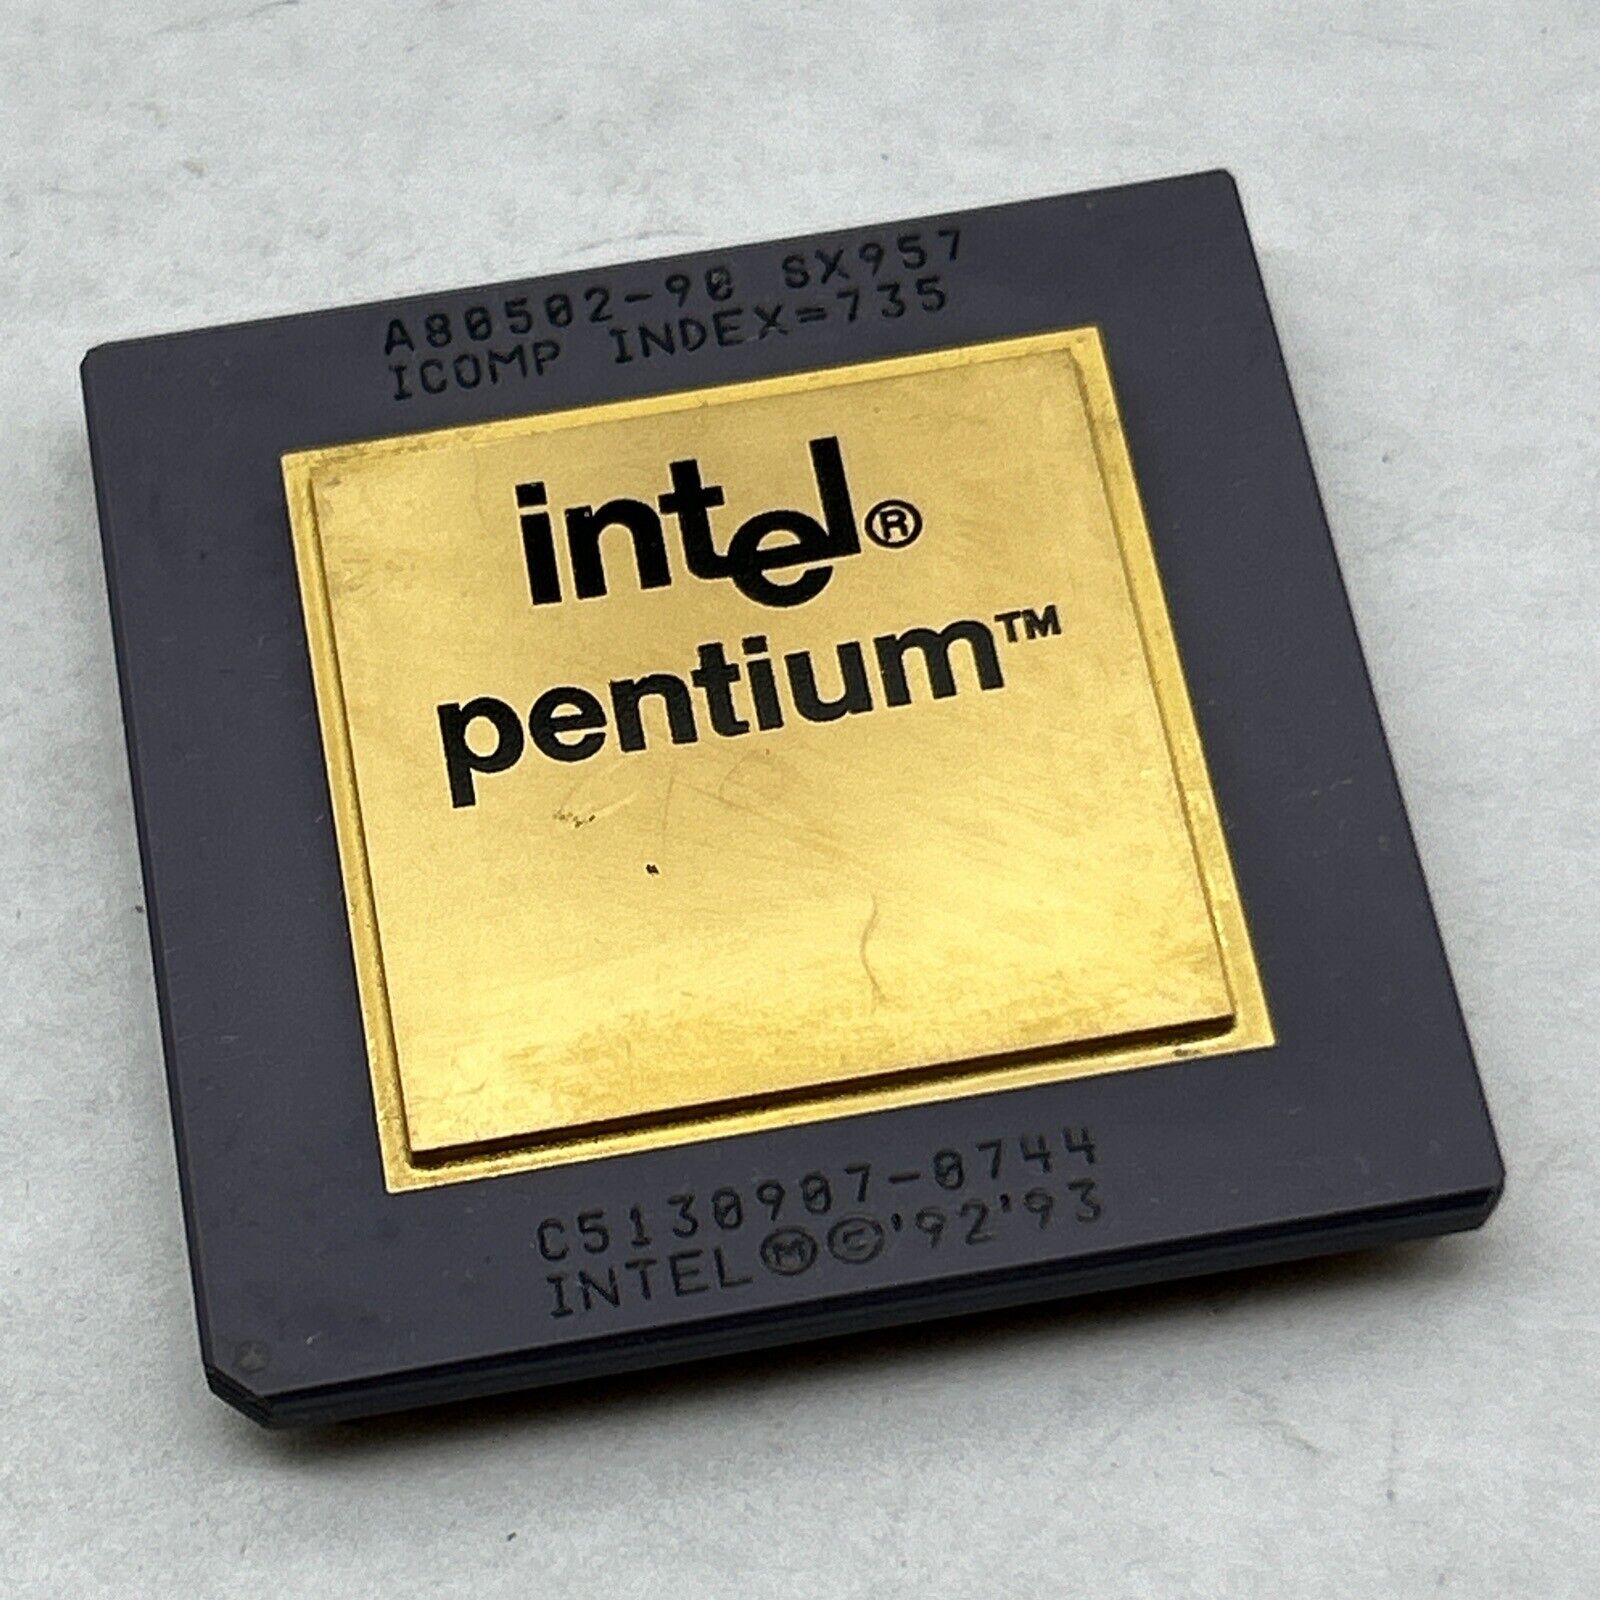 Intel Pentium 90 Mhz CPU 1992 P90 A80502-90 Gold Top Processor SX957 SX879